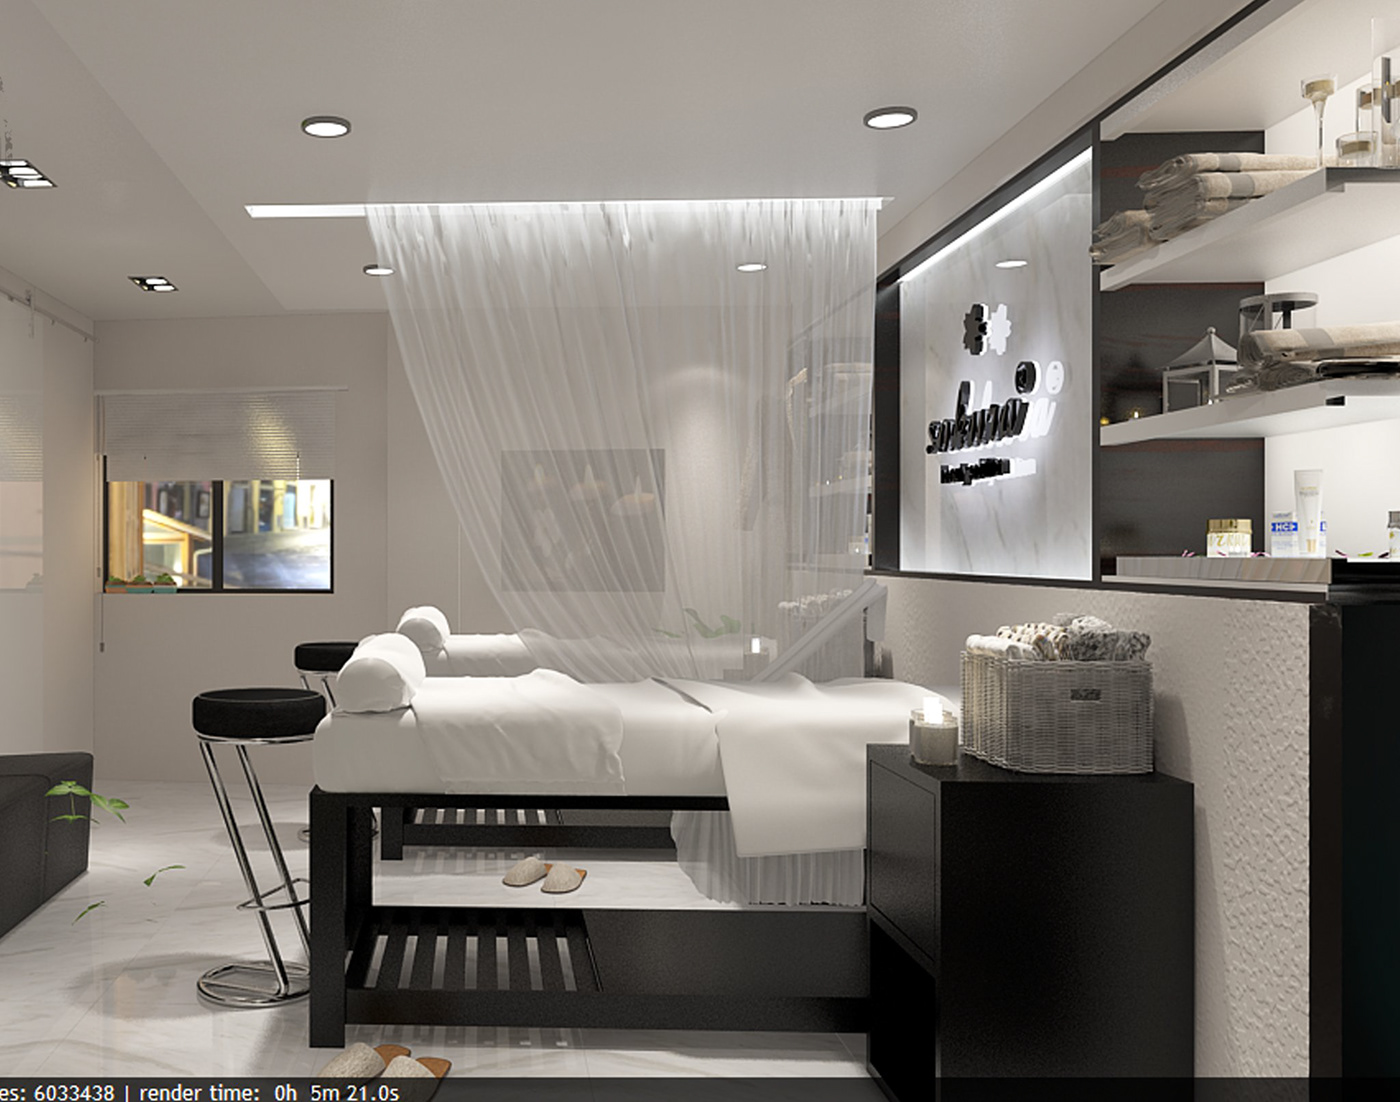 cosmetics spa design Interior architecture